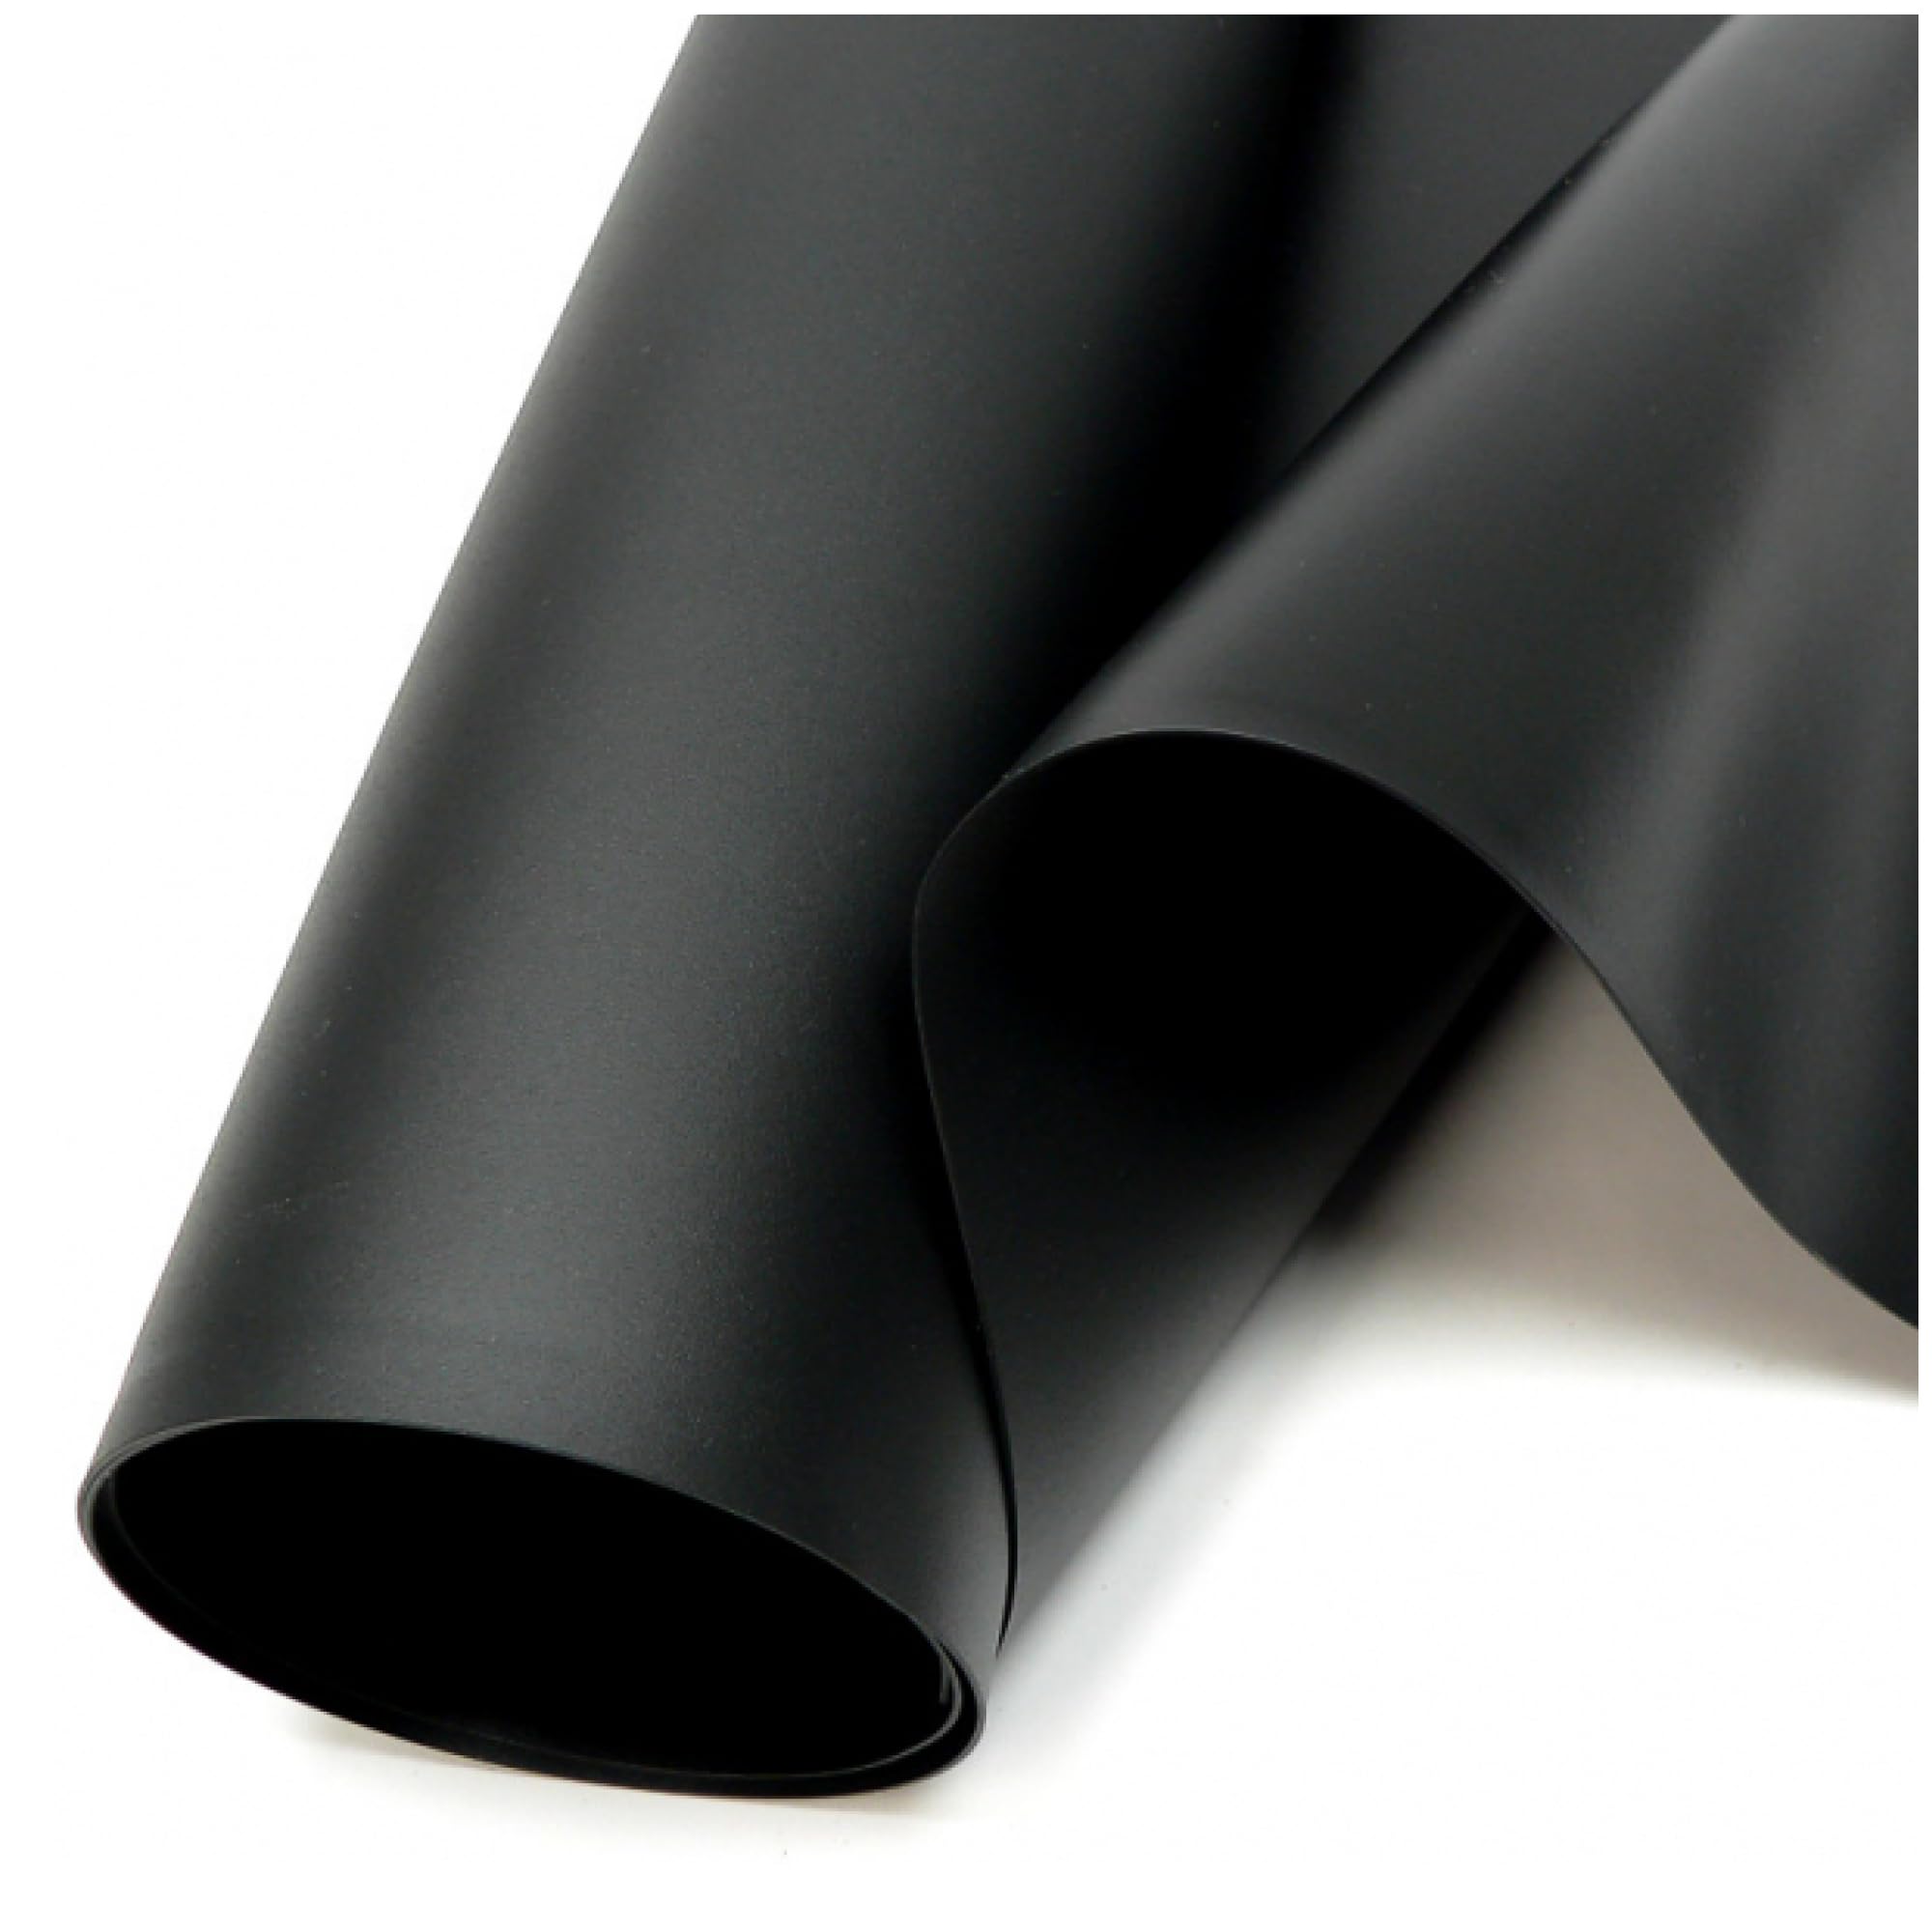 SIKA Premium PVC Teichfolie schwarz (PVC Stärke 0,5 mm, 3 m x 8 m) - Verschiedene Stärken & Größen/PVC Folie schwarz auch geeignet als Hochbeet Folie wasserdicht